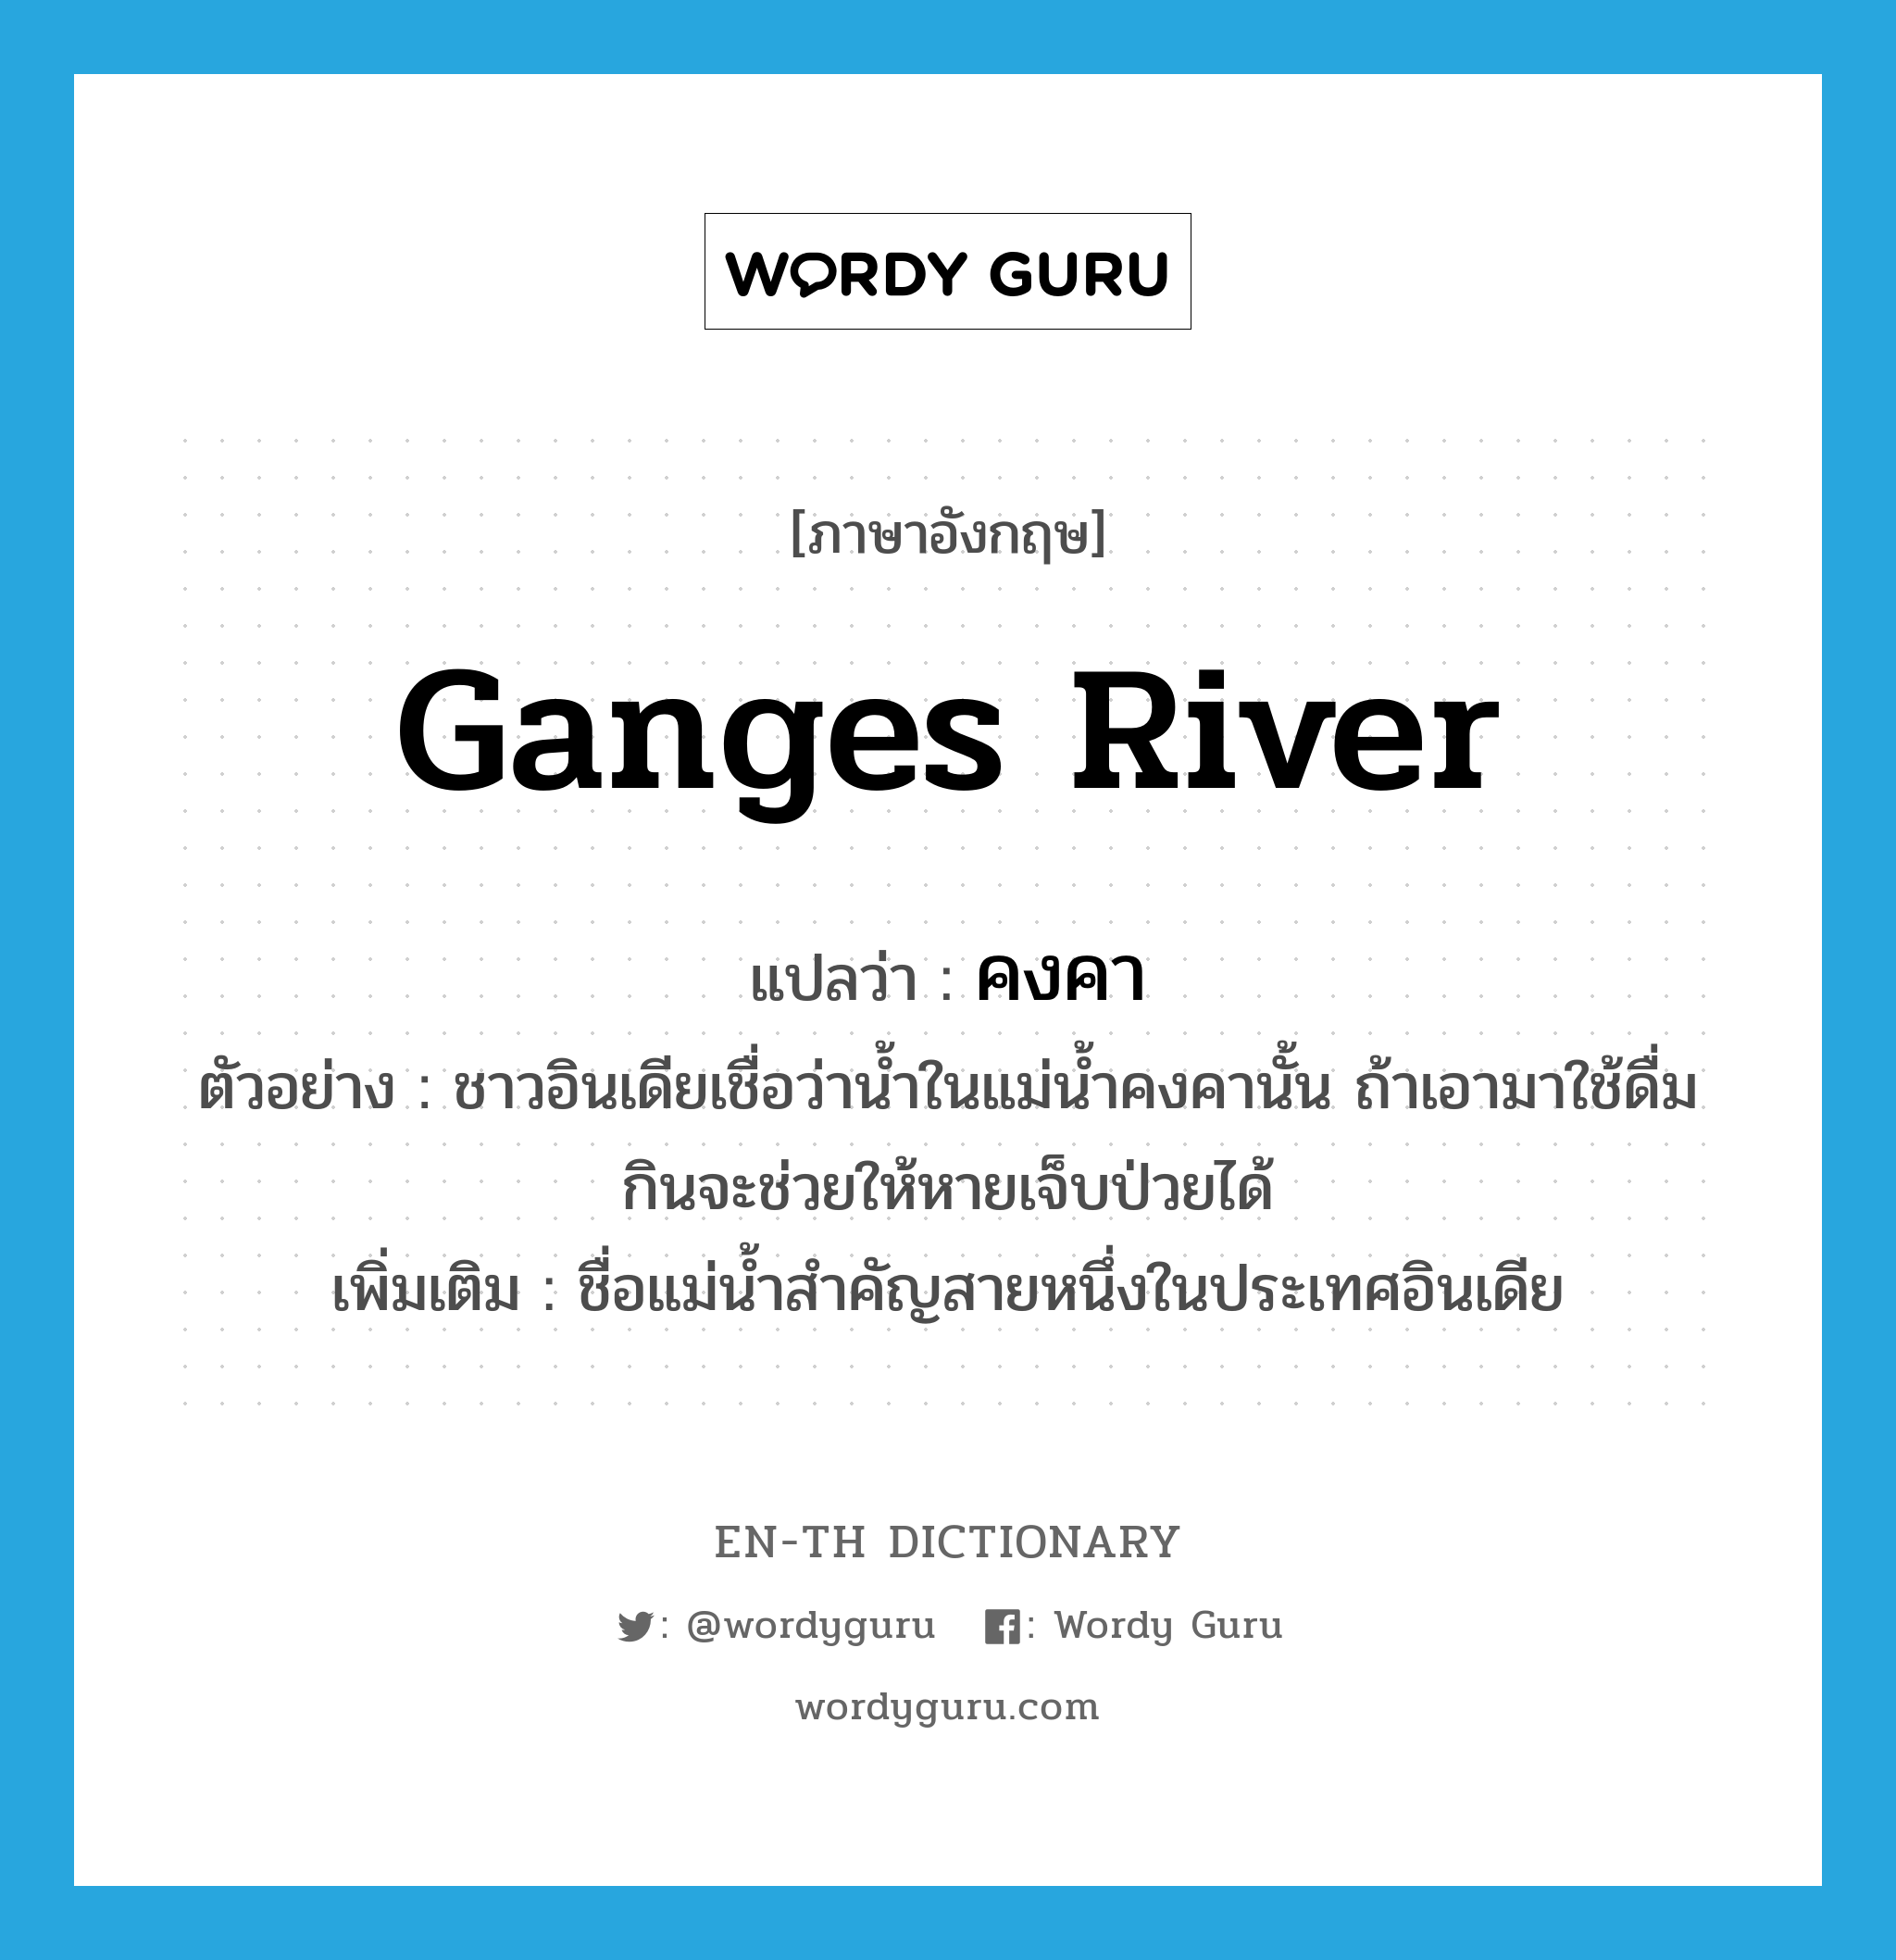 คงคา ภาษาอังกฤษ?, คำศัพท์ภาษาอังกฤษ คงคา แปลว่า Ganges River ประเภท N ตัวอย่าง ชาวอินเดียเชื่อว่าน้ำในแม่น้ำคงคานั้น ถ้าเอามาใช้ดื่มกินจะช่วยให้หายเจ็บป่วยได้ เพิ่มเติม ชื่อแม่น้ำสำคัญสายหนึ่งในประเทศอินเดีย หมวด N